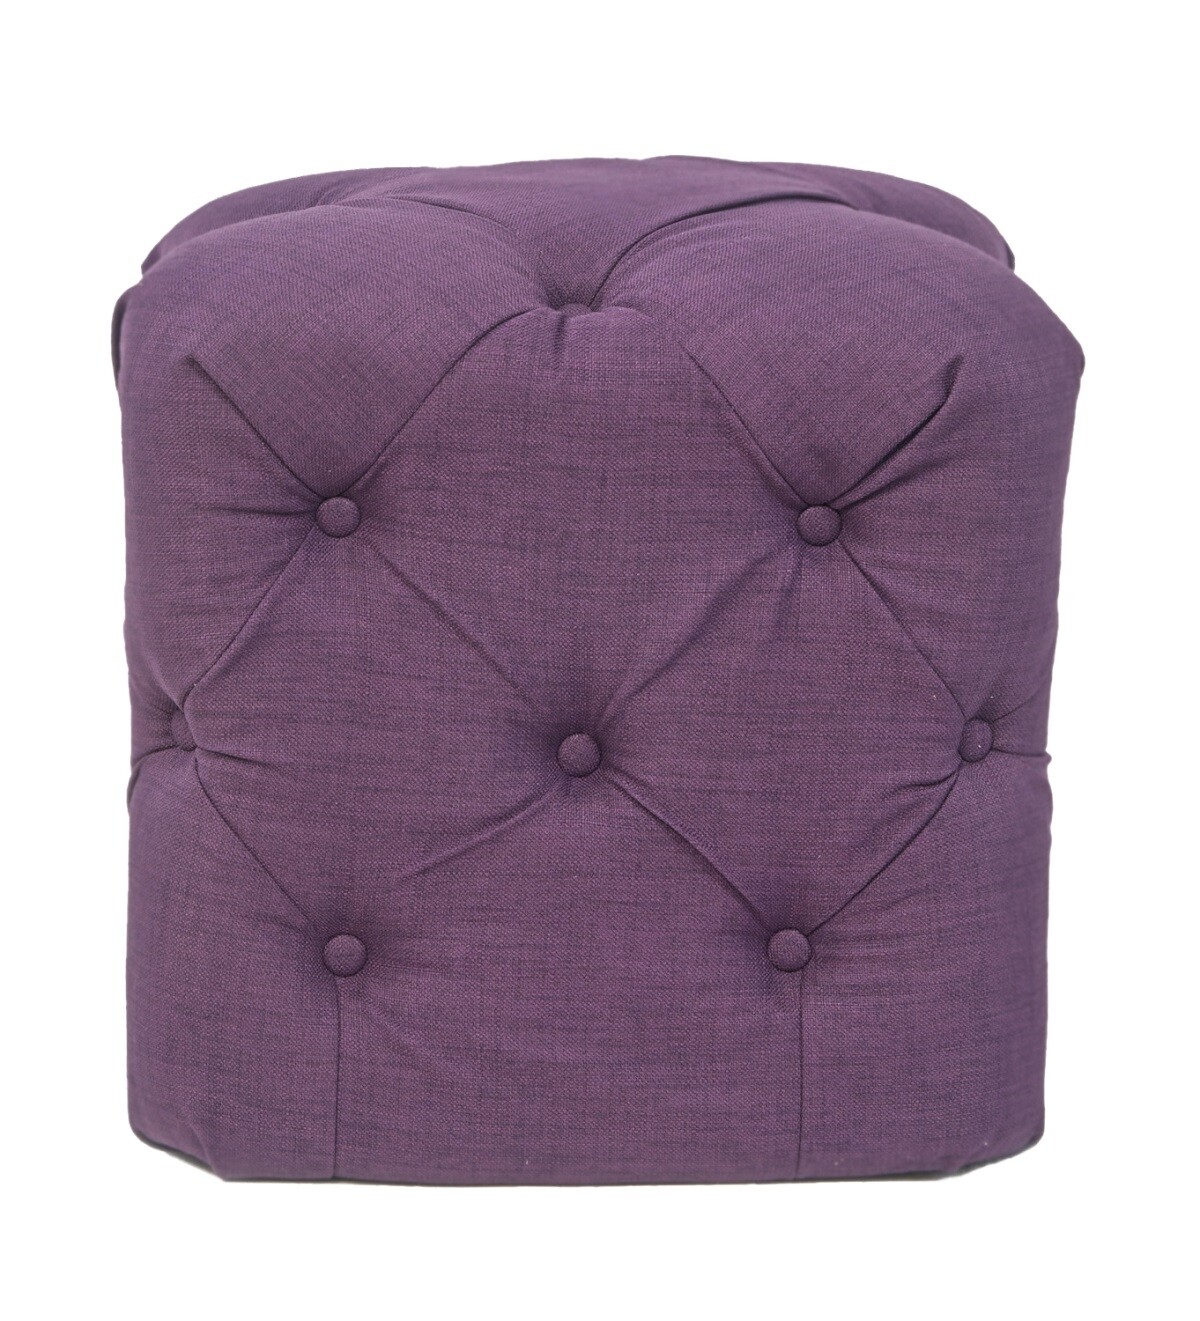 Пуфик квадратный со стяжкой фиолетовый 42 см Amrit purple